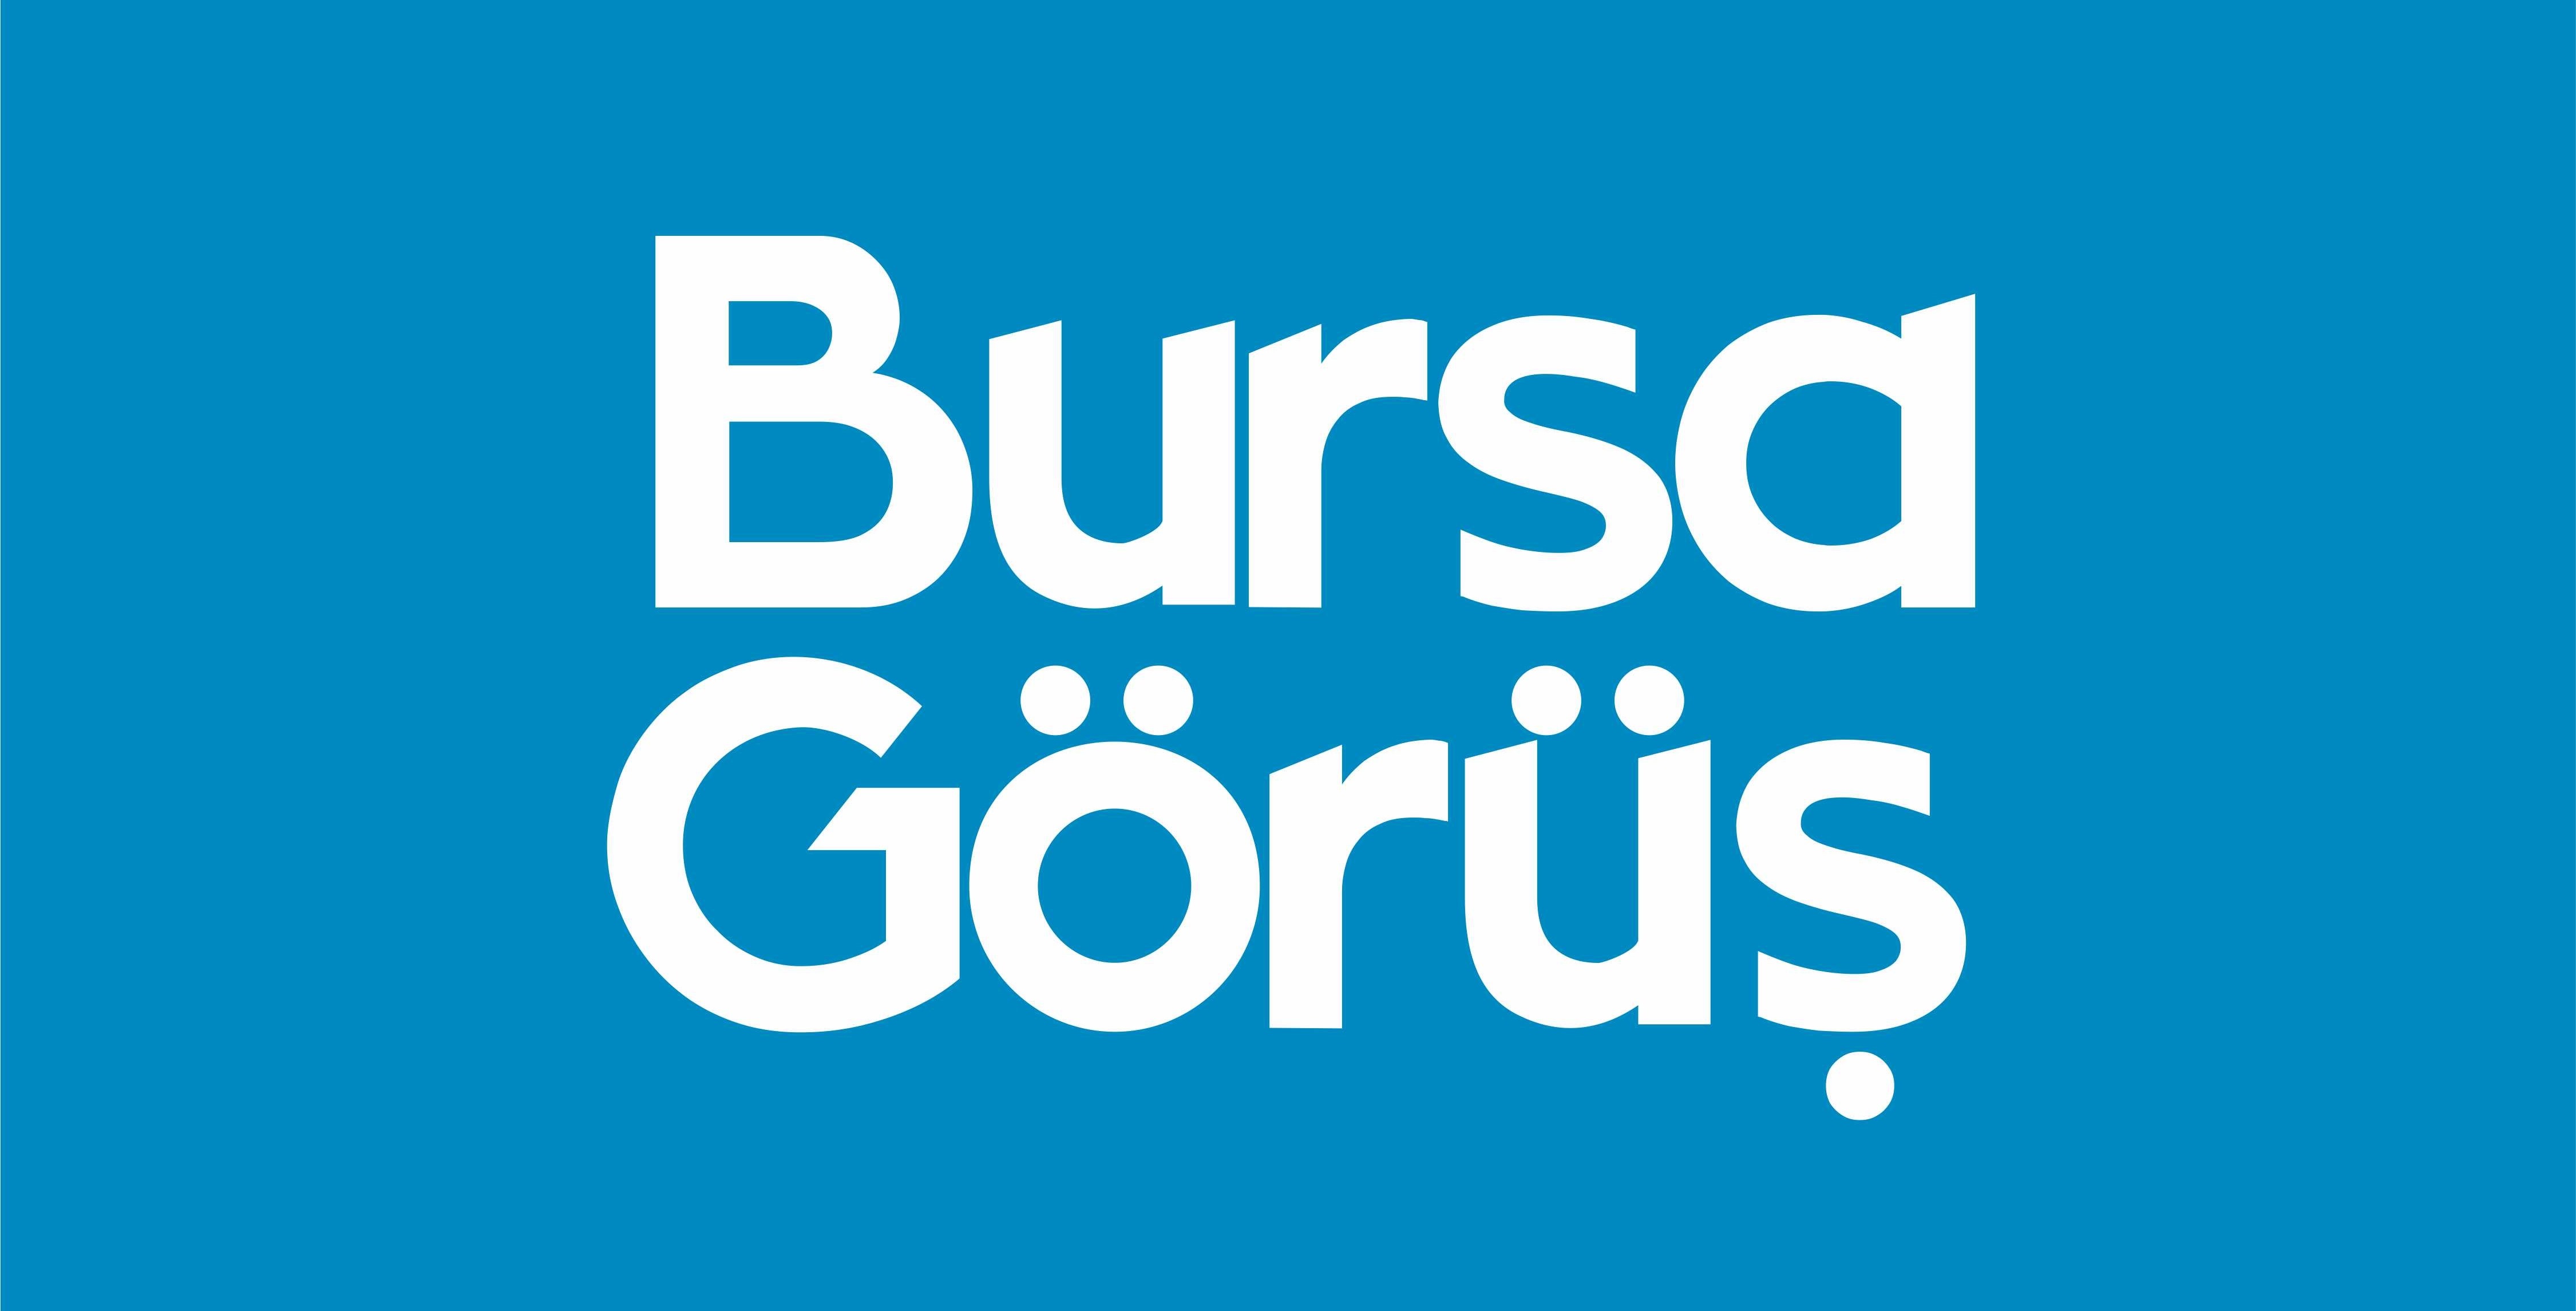 Bursa Uludağ Üniversitesi’ni lise öğrencilerine anlattılar